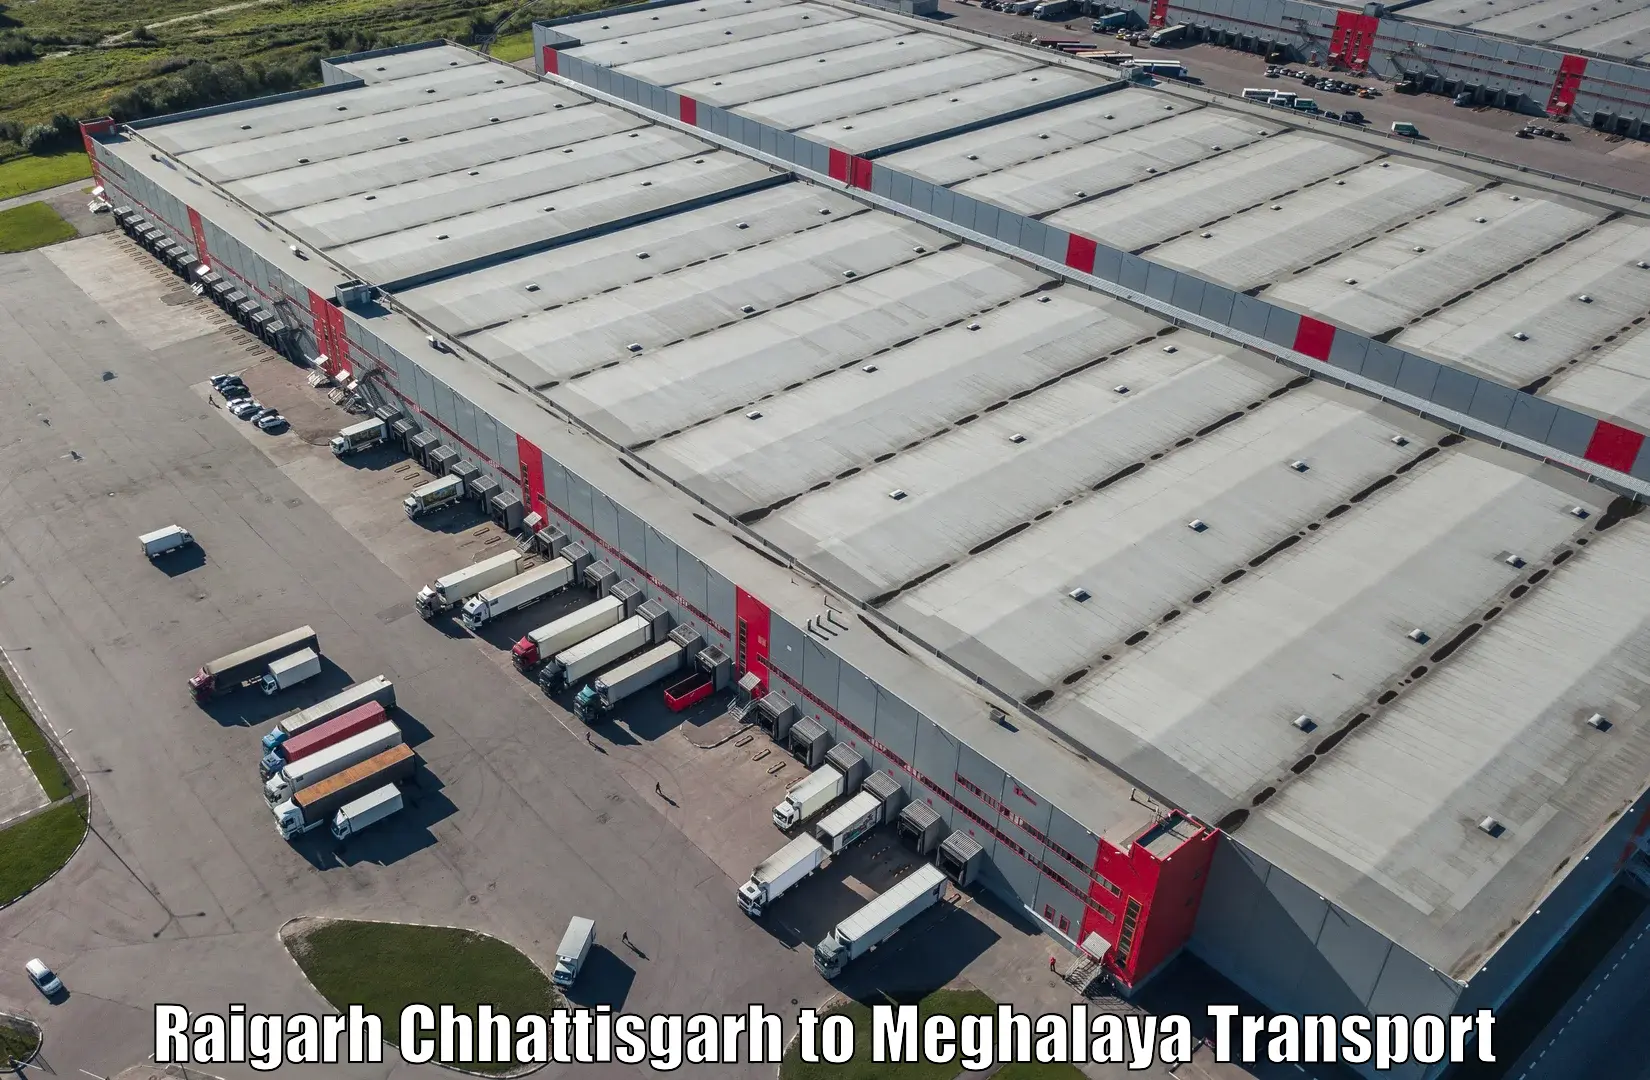 Delivery service Raigarh Chhattisgarh to Nongpoh